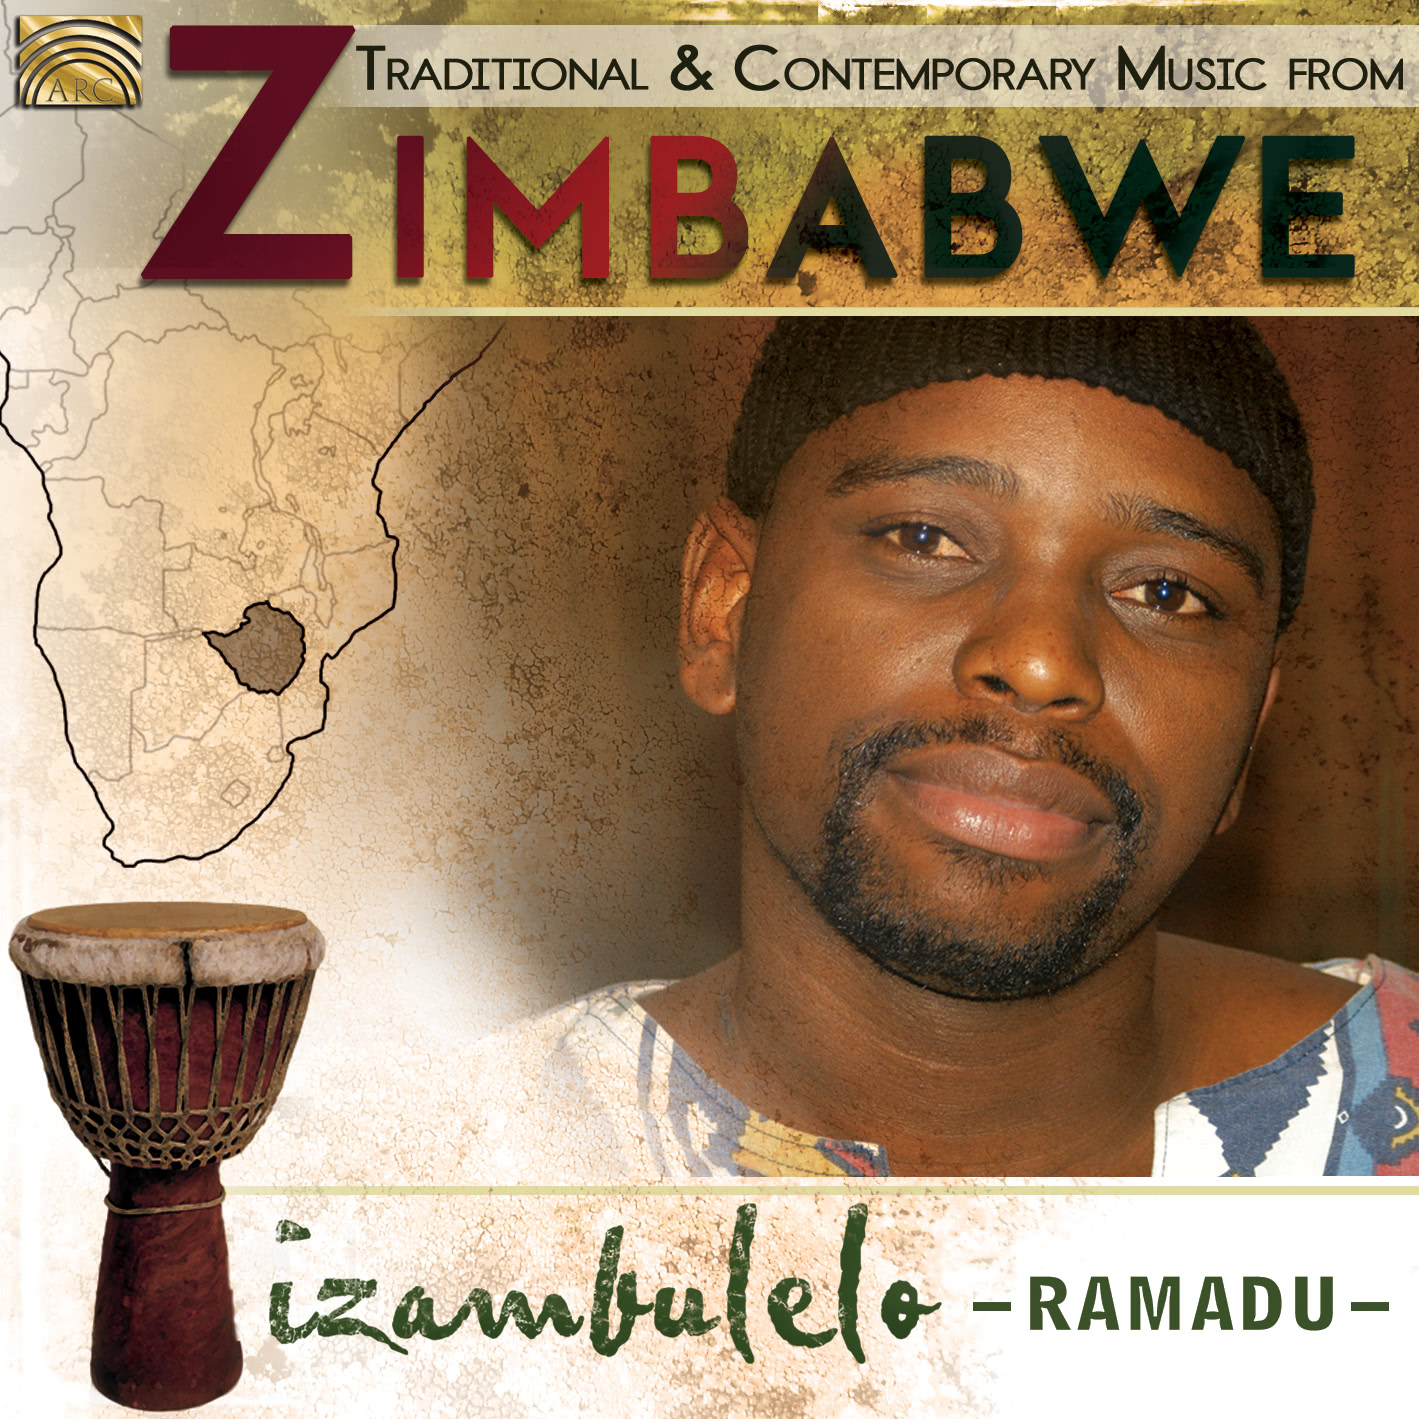 EUCD2717 Izambulelo - Traditional and Contemporary Music from Zimbabwe